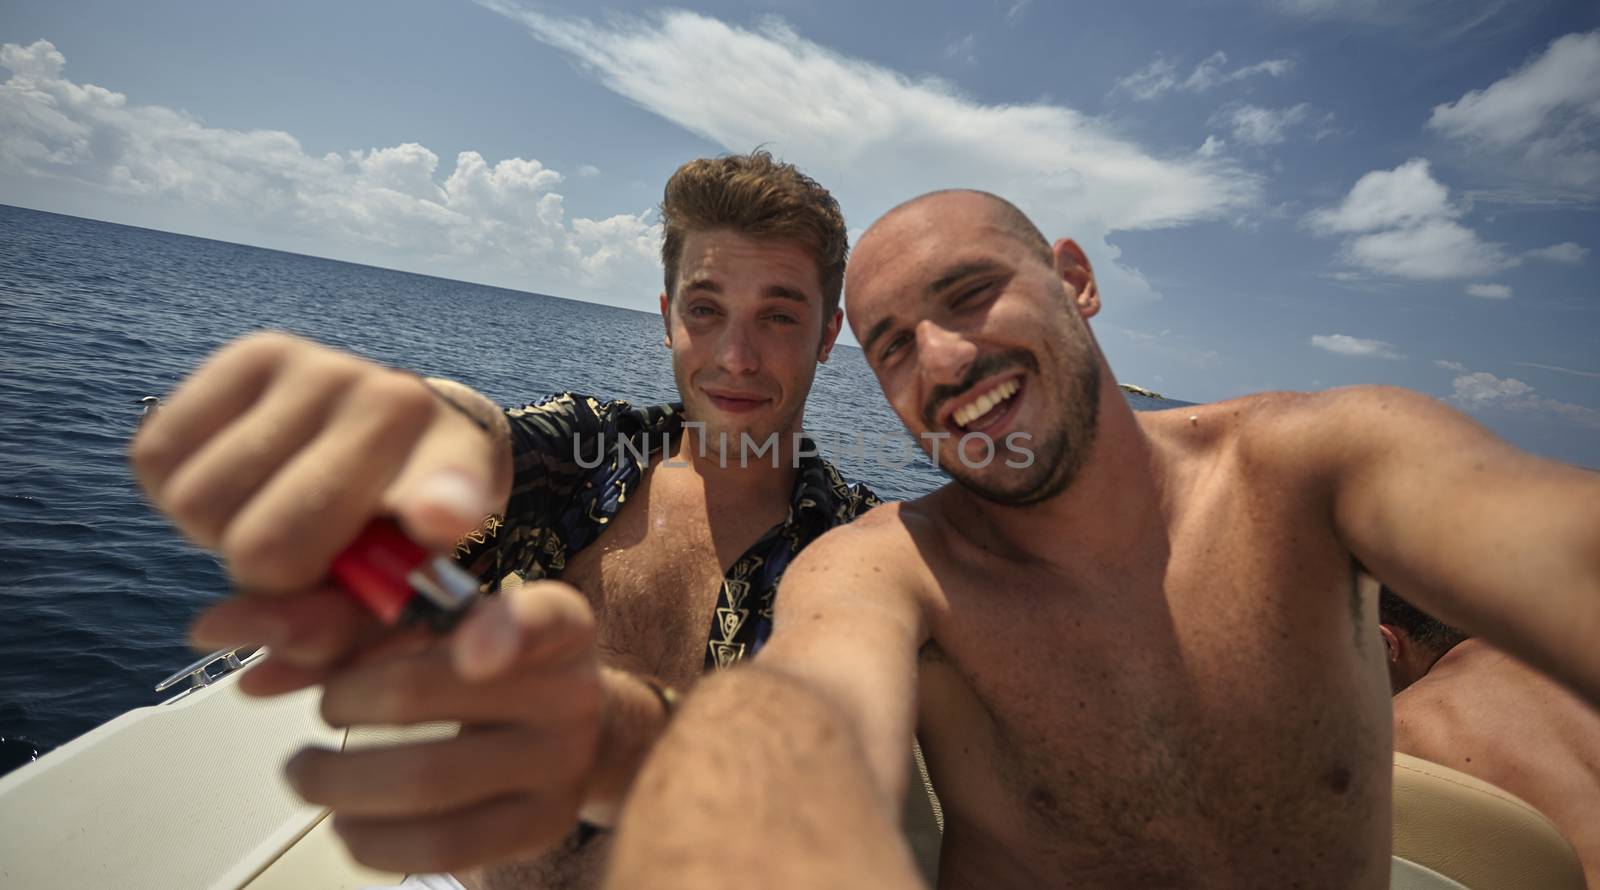 Guys on summer vacation in Sardinia